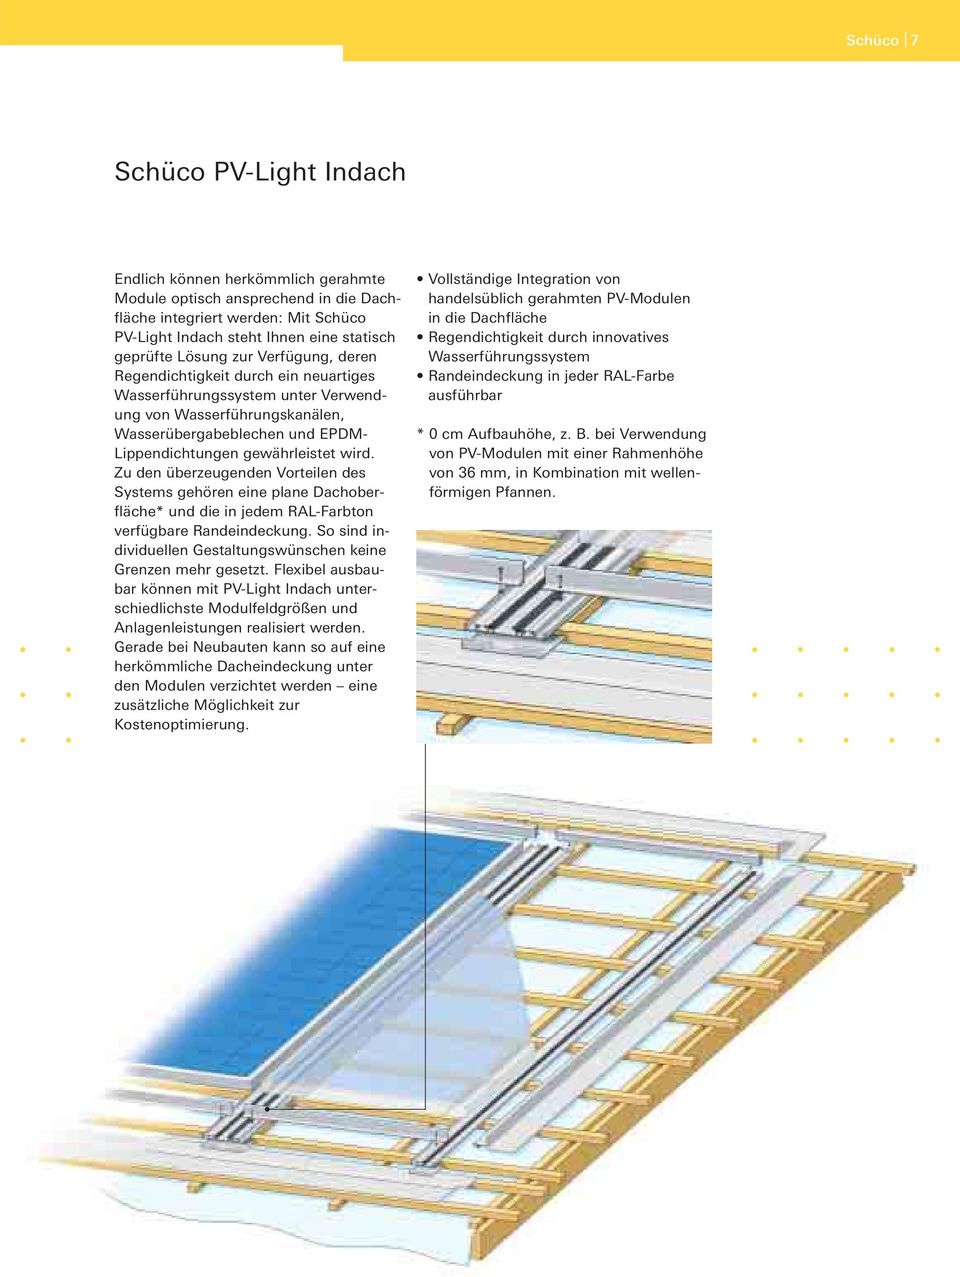 Zu den überzeugenden Vorteilen des Systems gehören eine plane Dachoberfläche* und die in jedem RAL-Farbton verfügbare Randeindeckung.